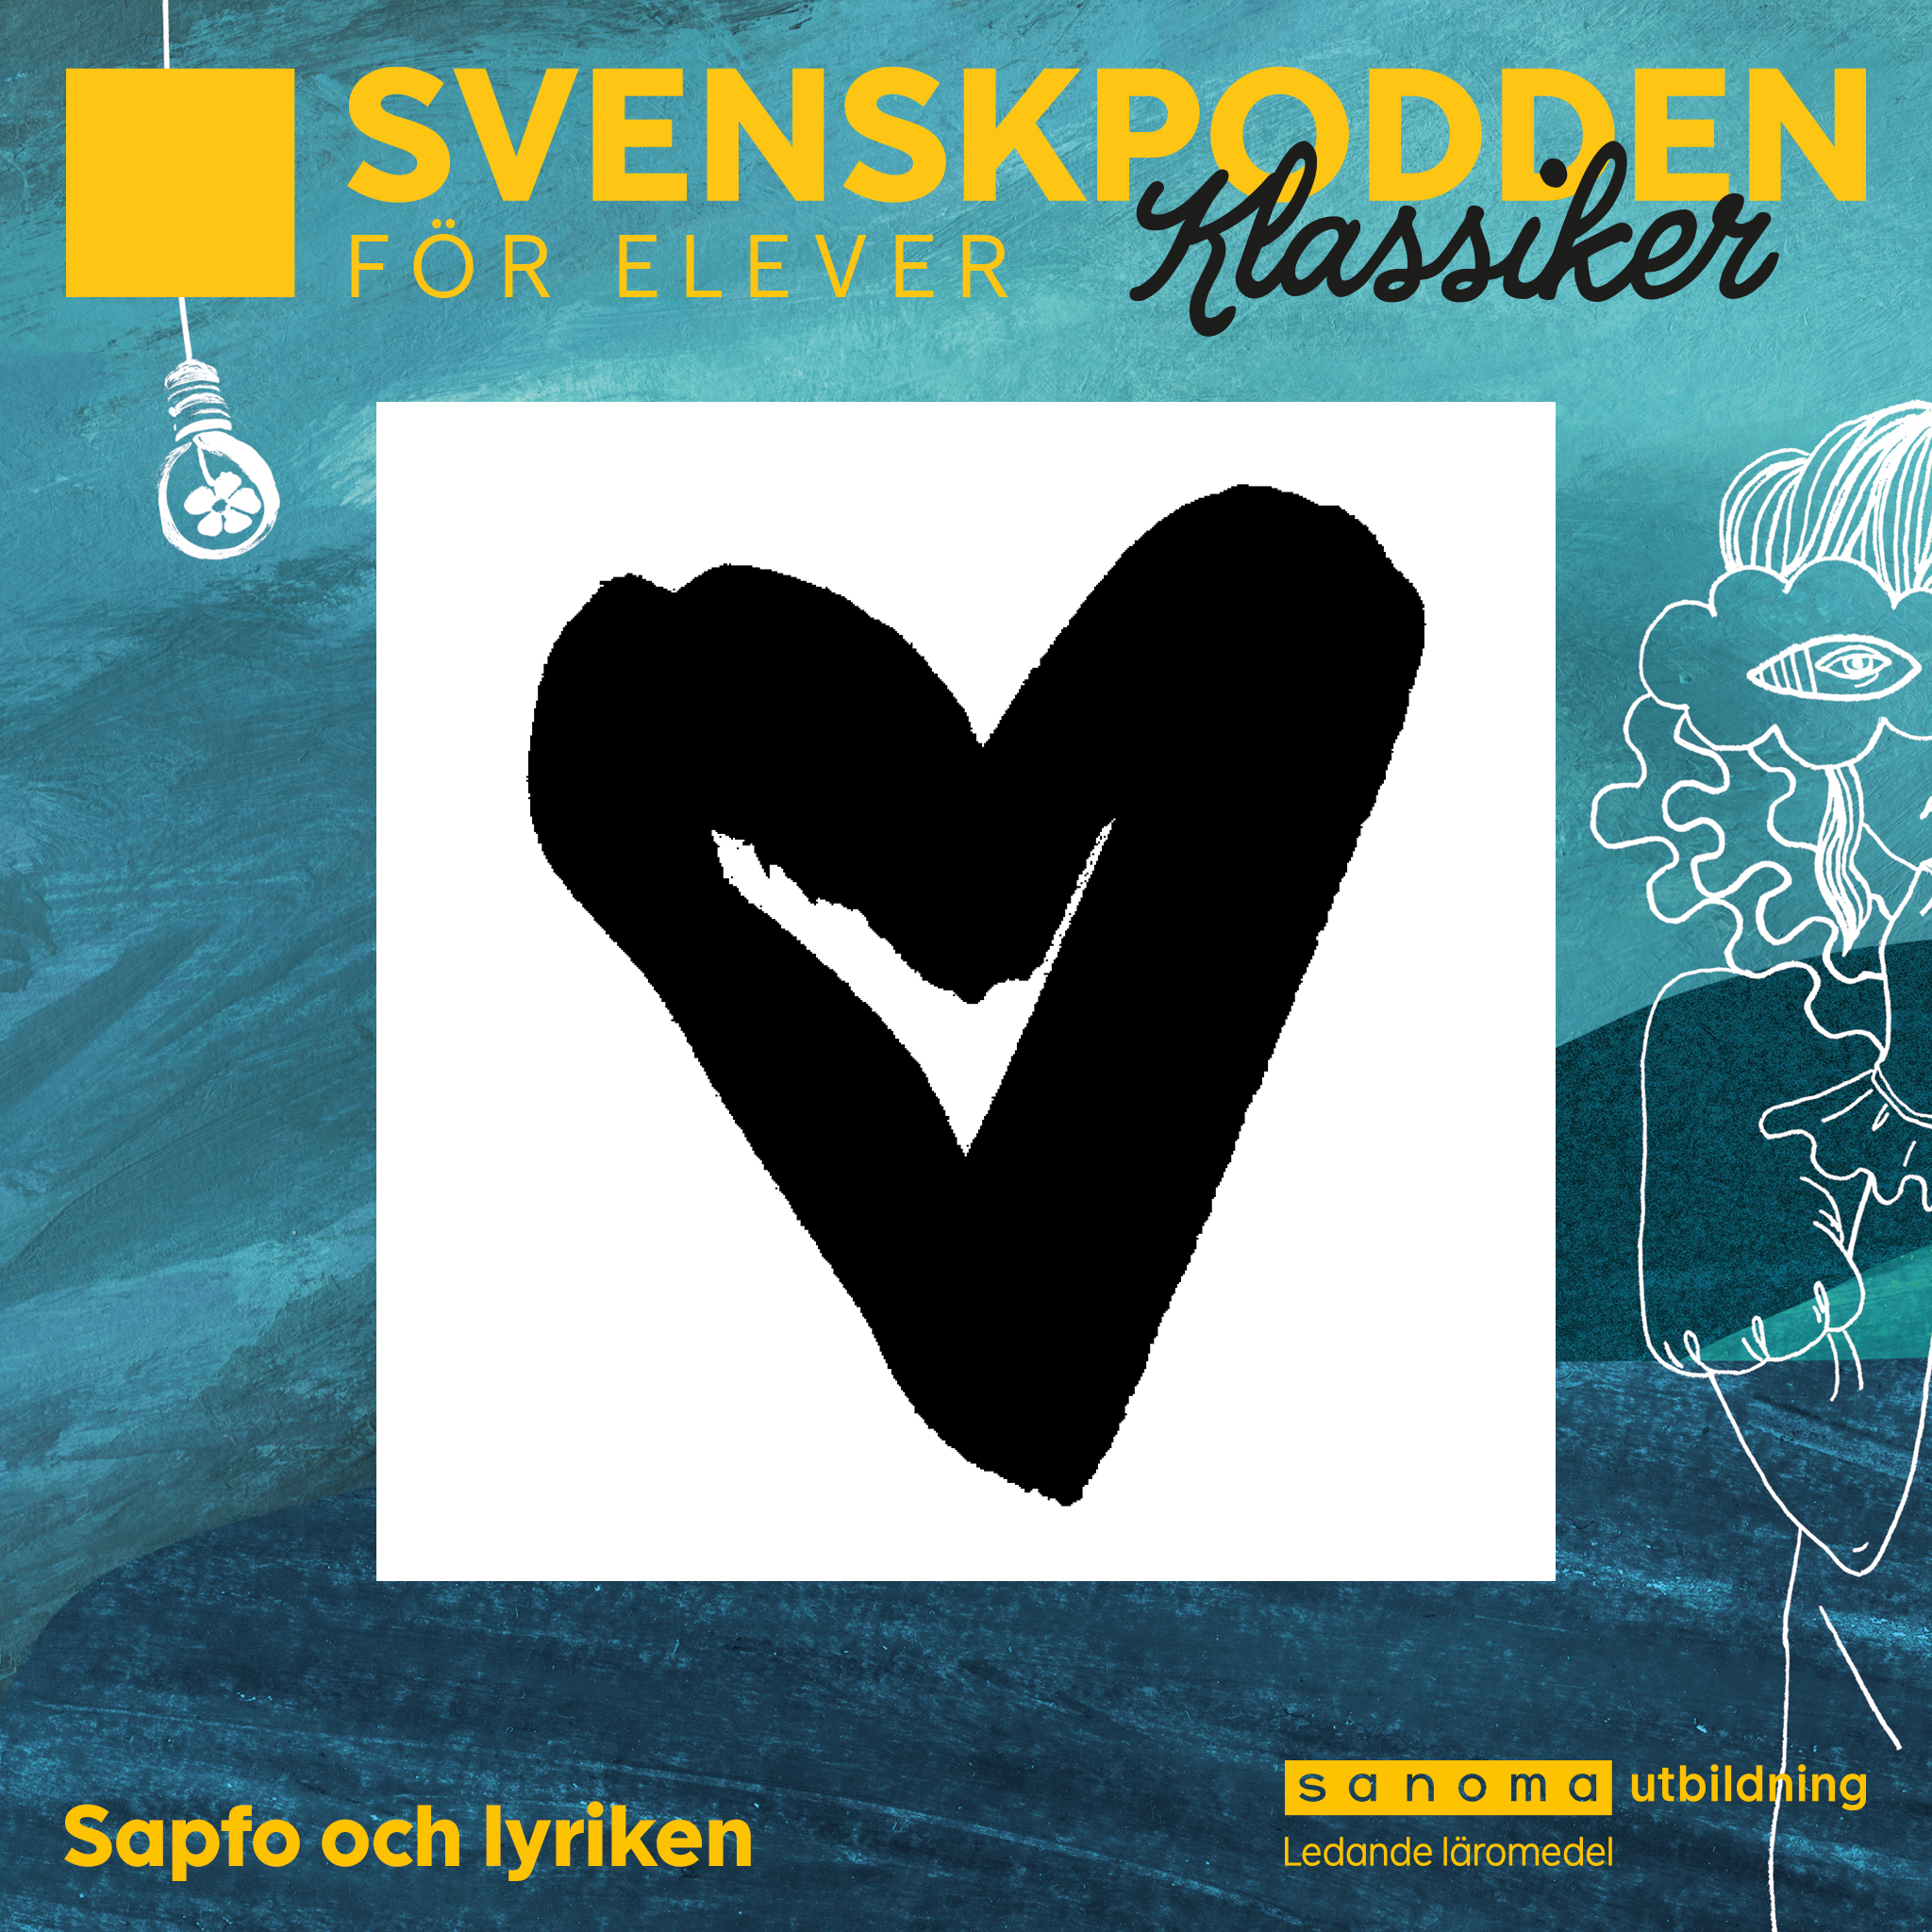 SvenskpoddenKlassiker-Podcaster-1.jpg